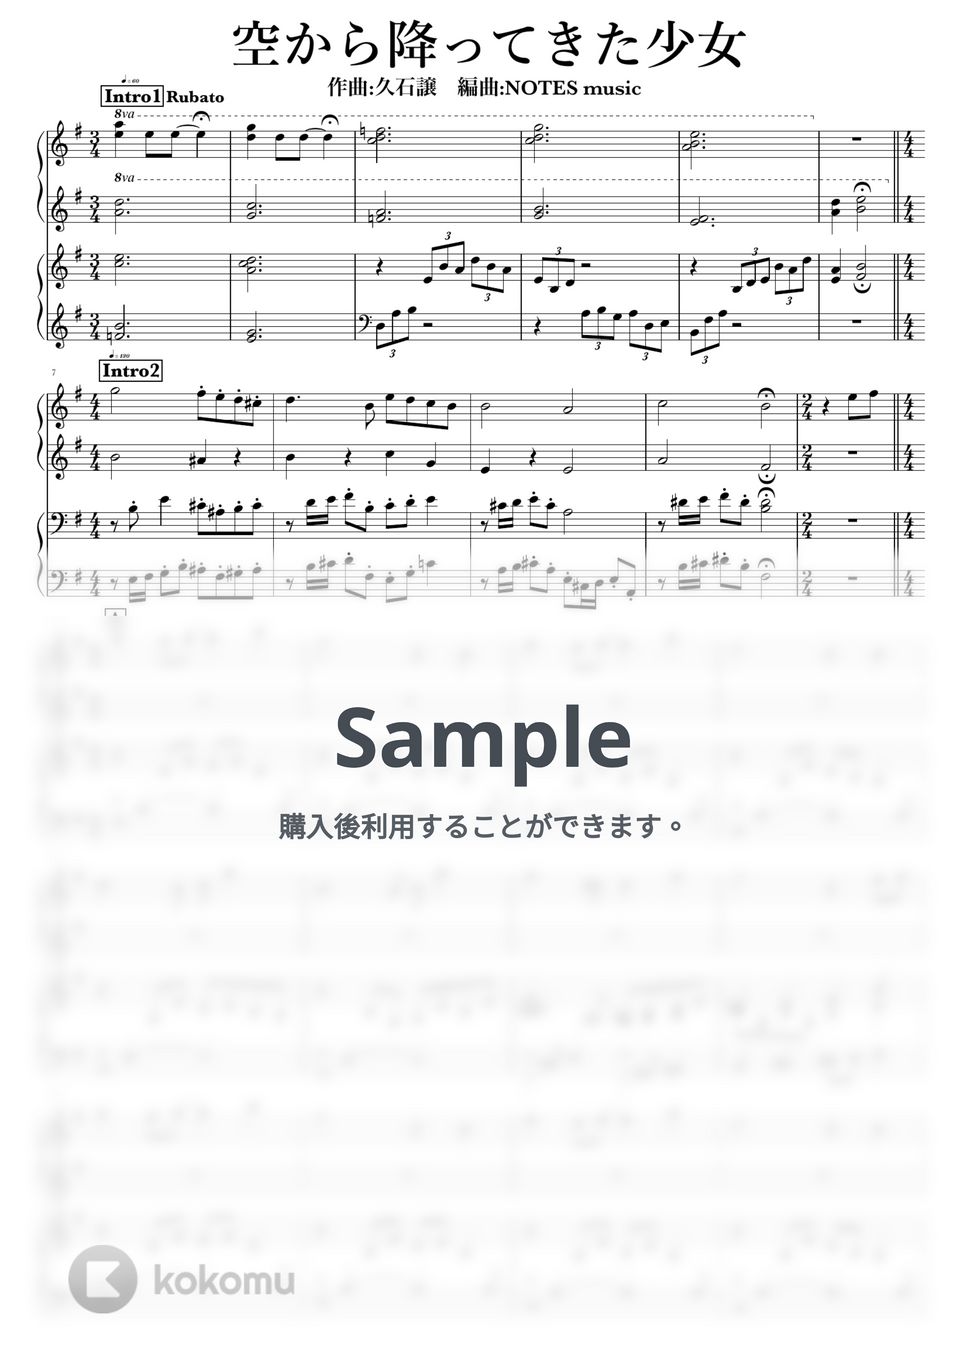 久石譲 - 空から降ってきた少女 by NOTES music